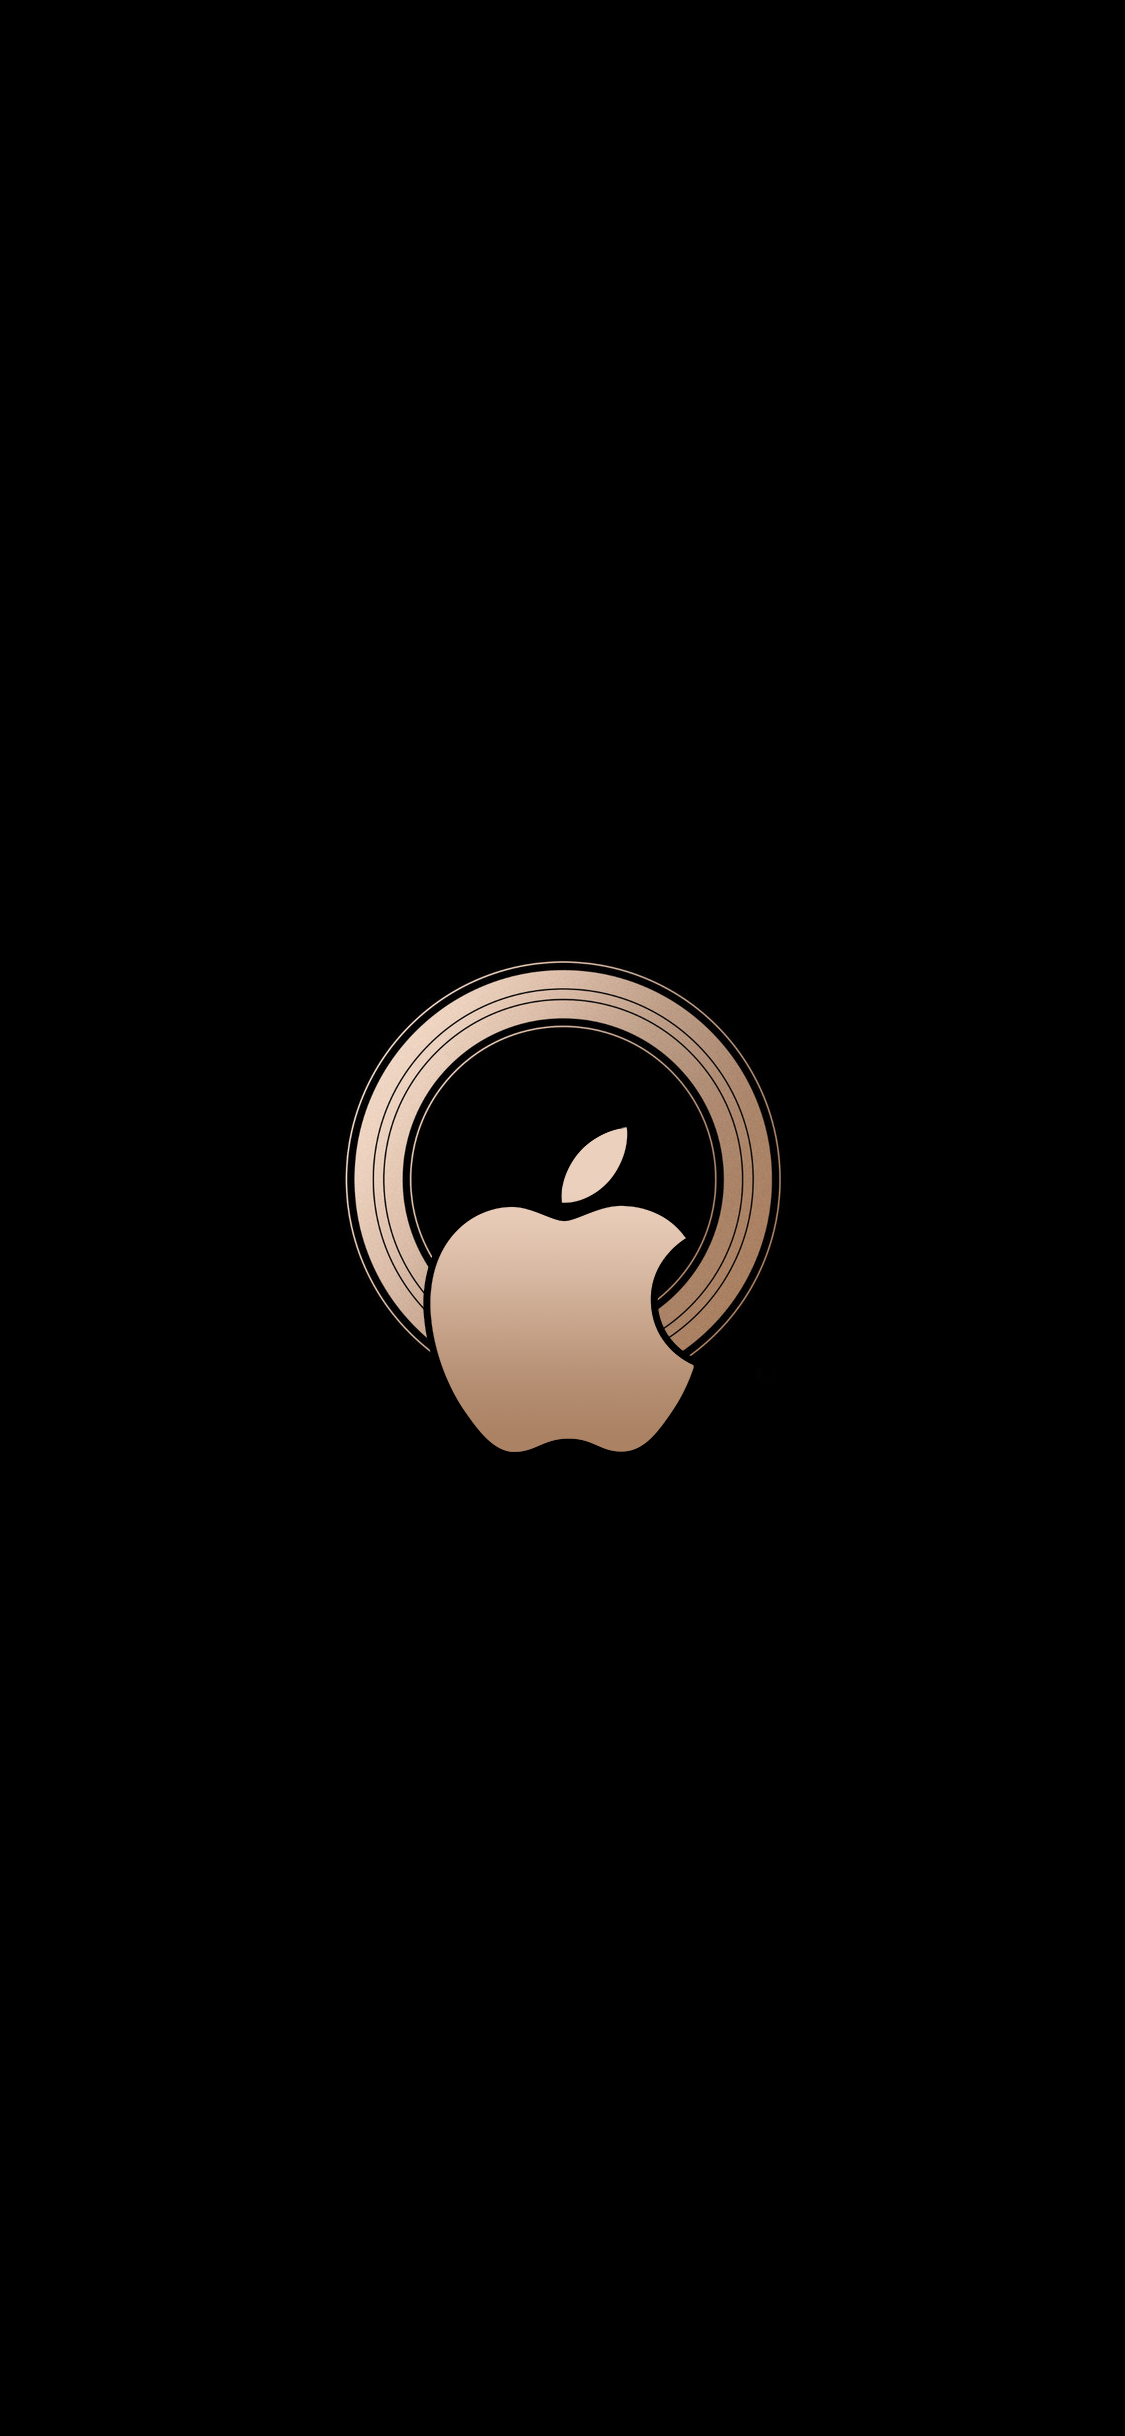 果迷必備 Apple 發表會視覺設計全系列iphone 桌布下載 蘋果仁 果仁iphone Ios 好物推薦科技媒體